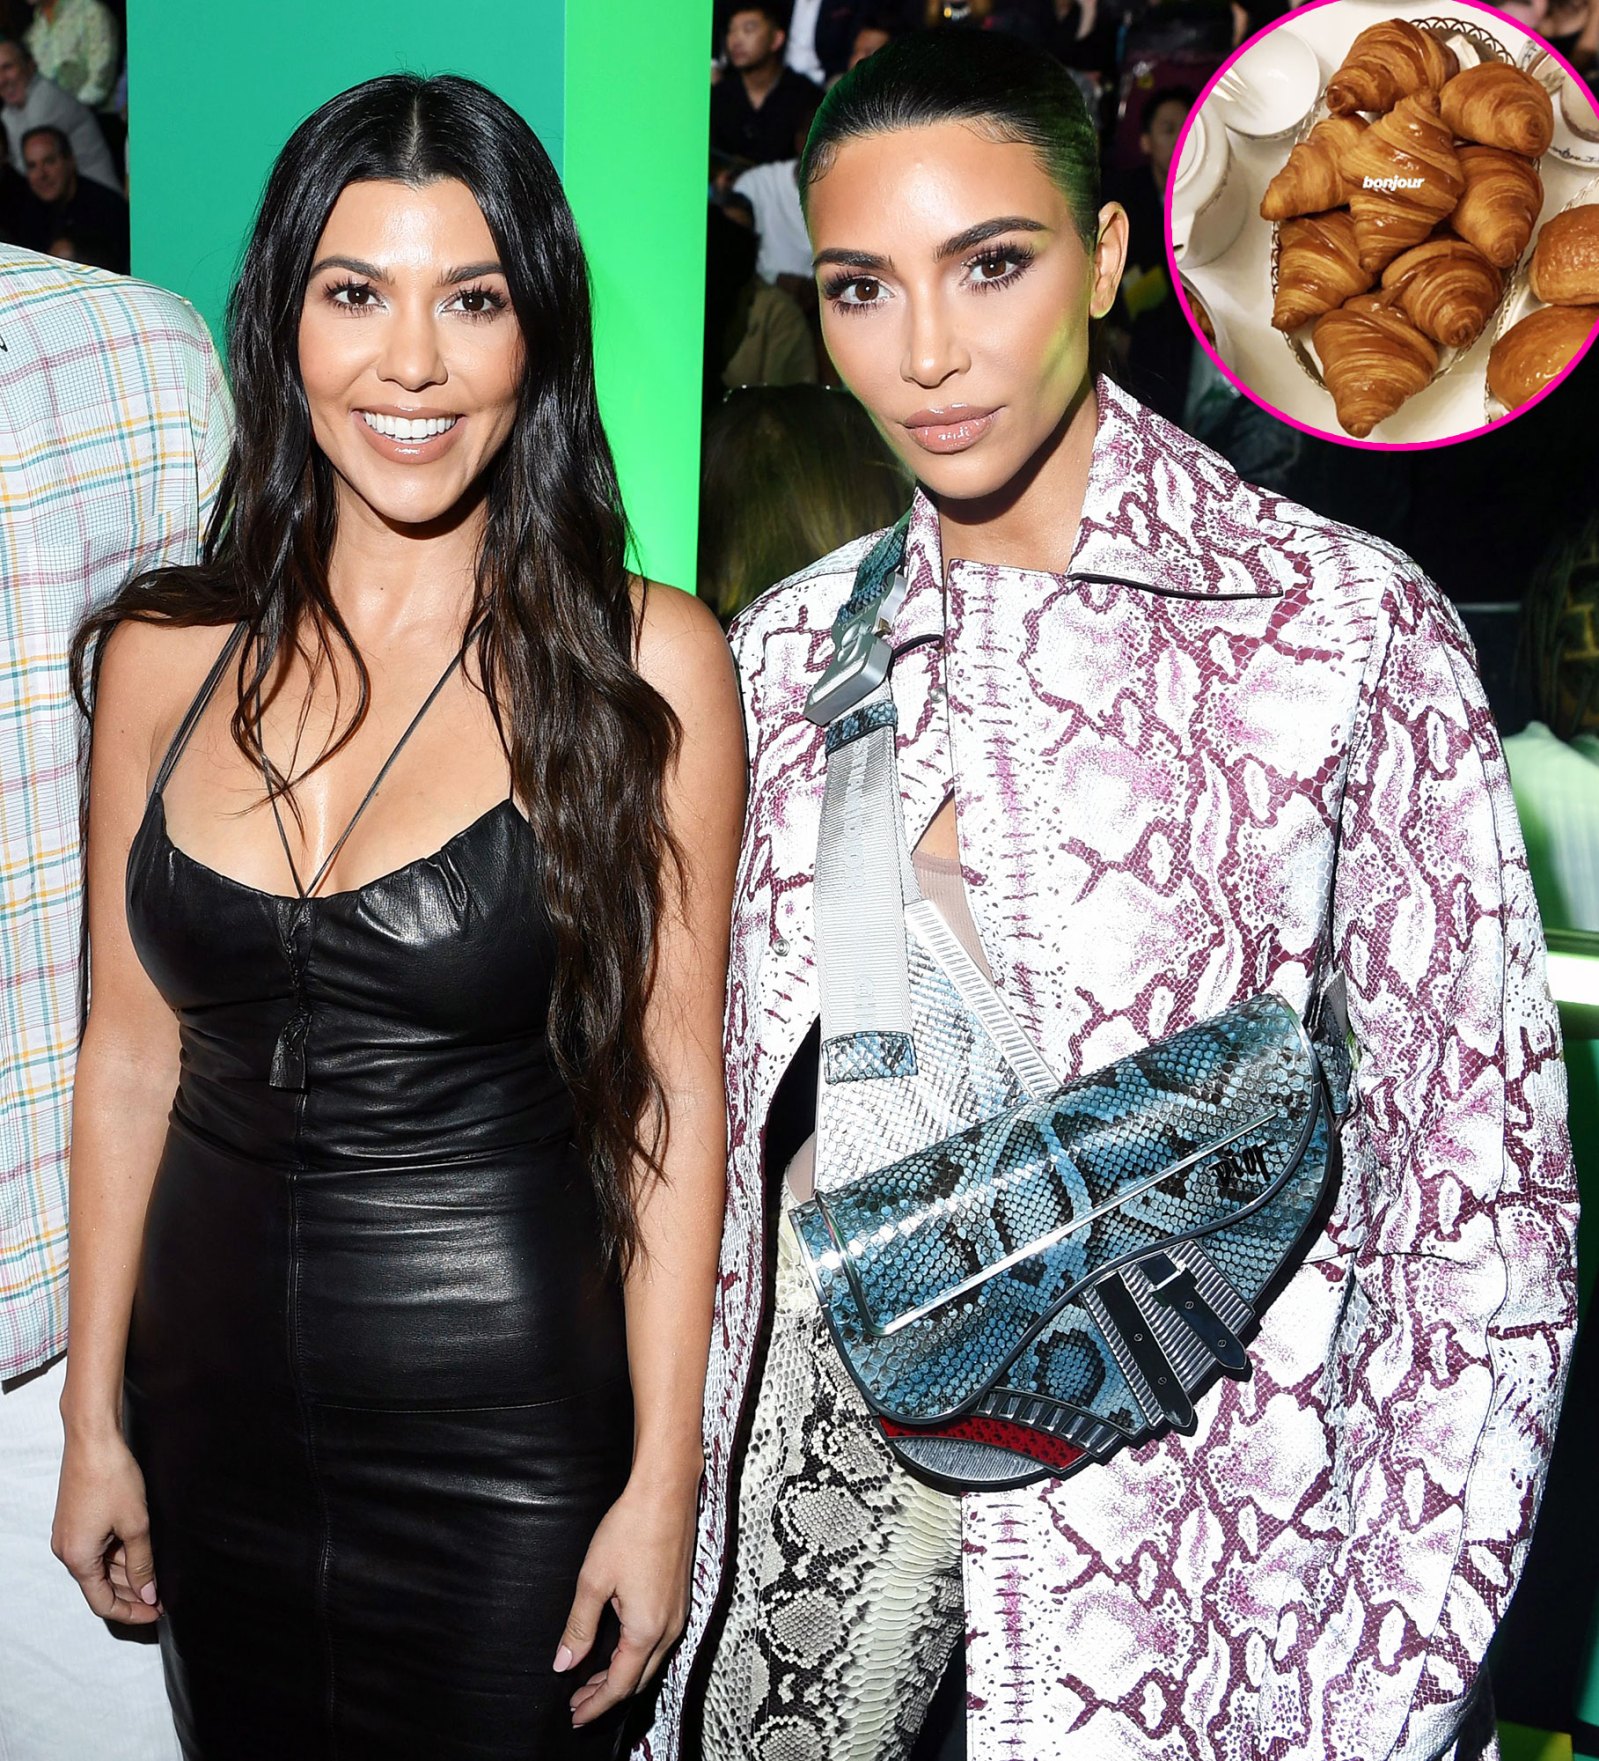 What Kim and Kourtney Kardashian Are Eating in Paris During Fashion Week